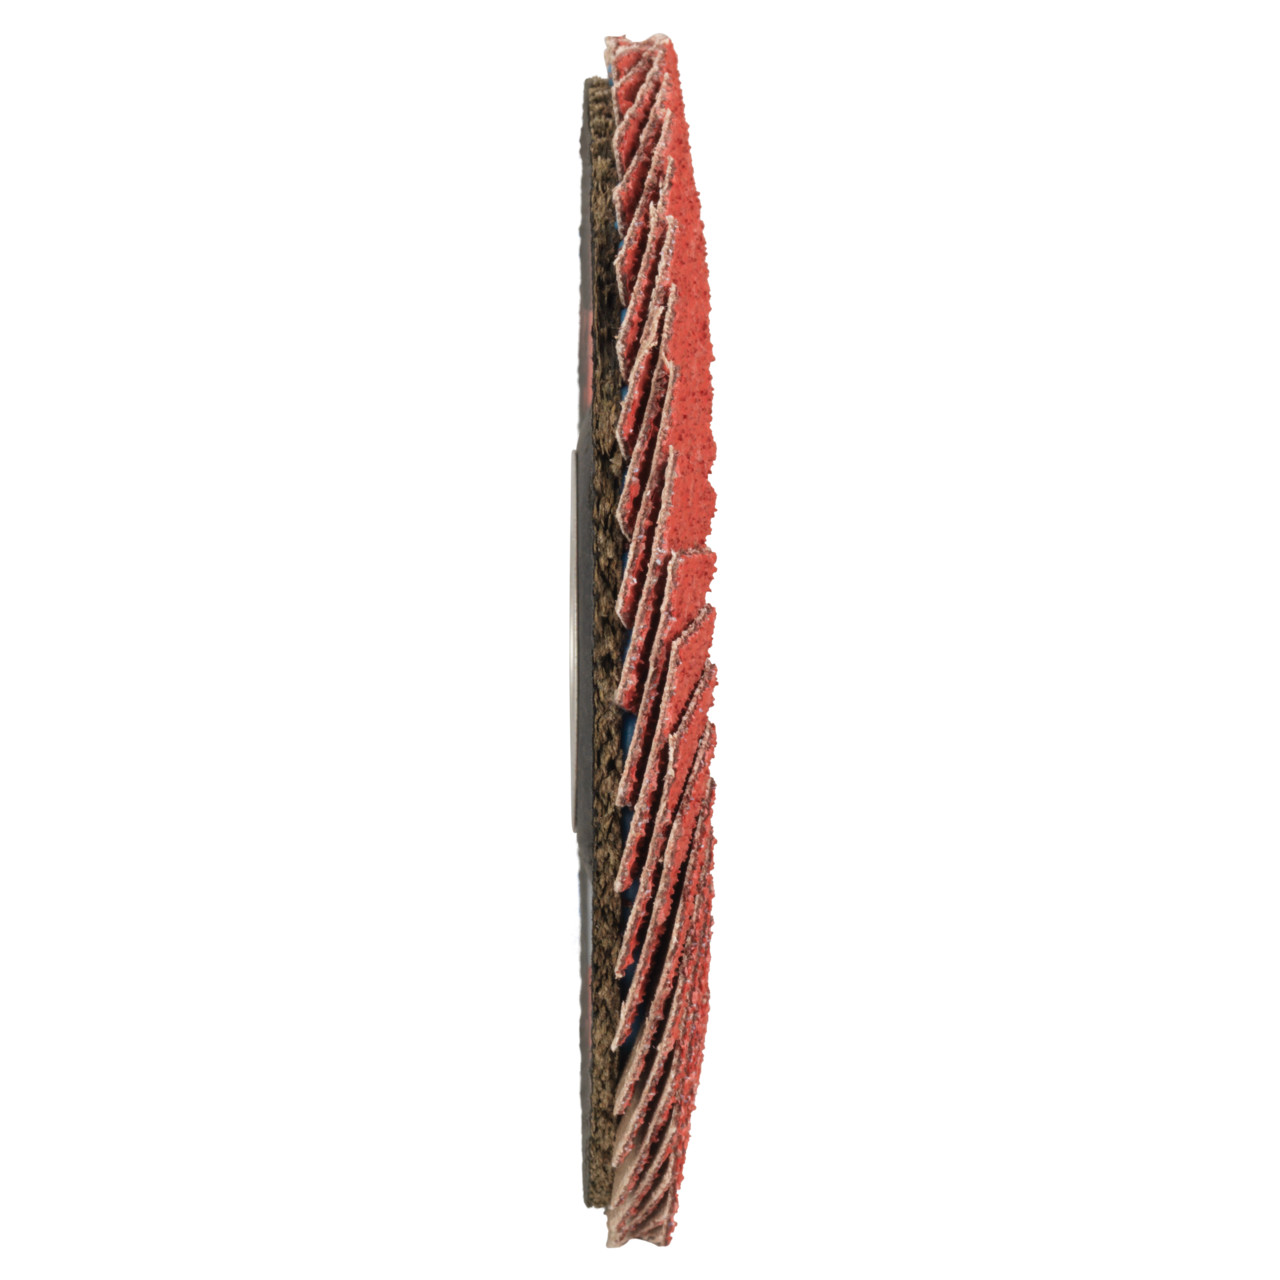 Tyrolit Getande borgring DxH 115x22,23 CERAMIC voor roestvrij staal, P80, vorm: 27A - slingerontwerp (glasvezeldragerhuisontwerp), Art. 34166620